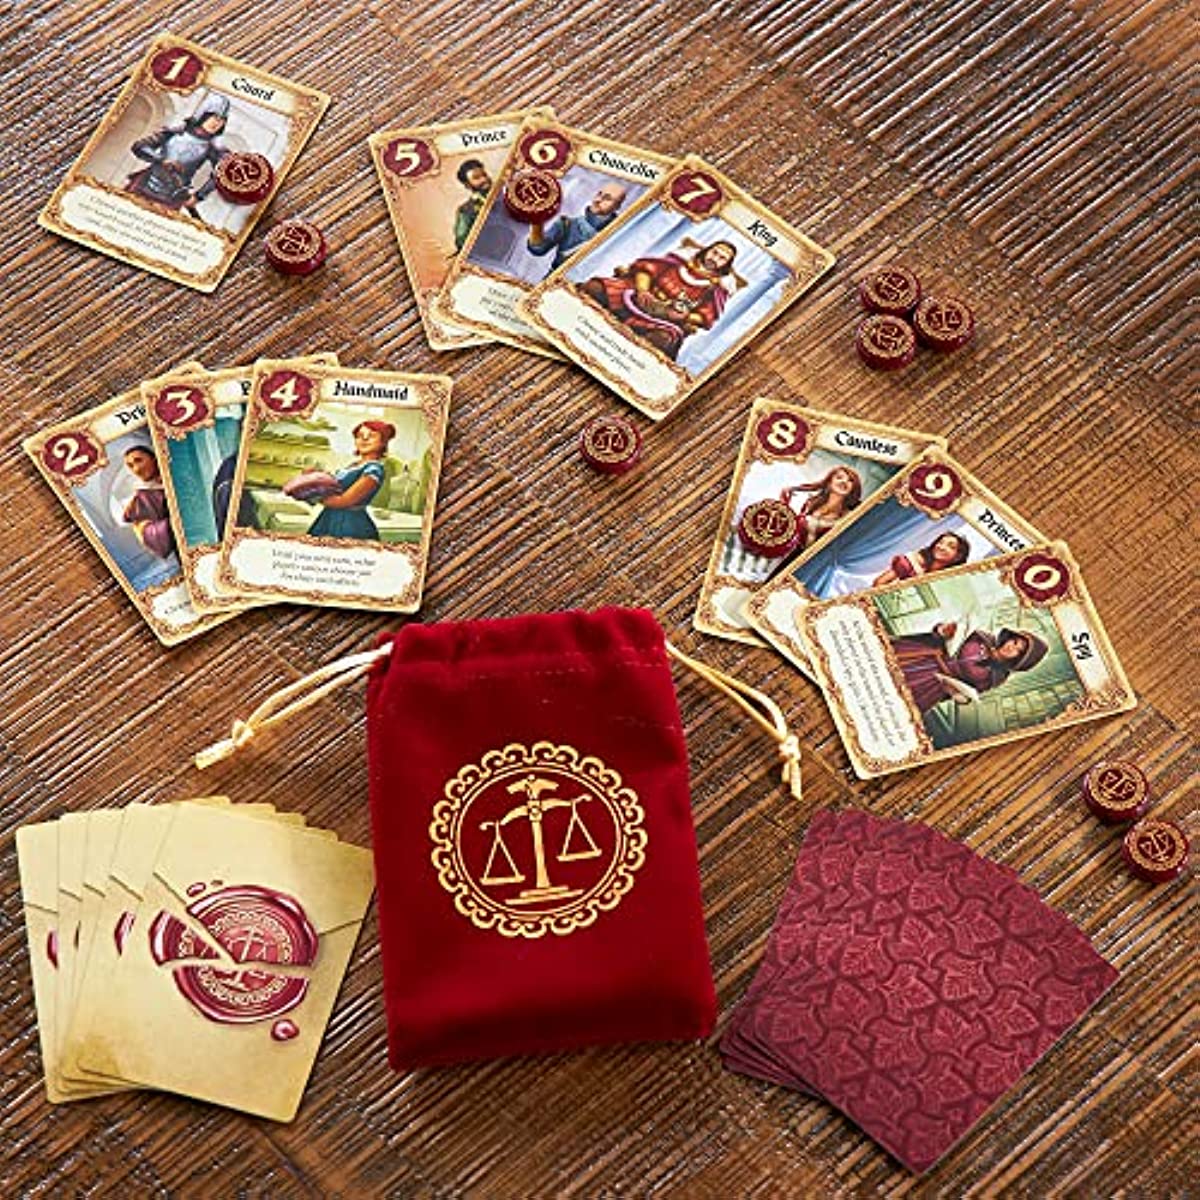 Love Letter Asmodée : King Jouet, Jeux de cartes Asmodée - Jeux de société